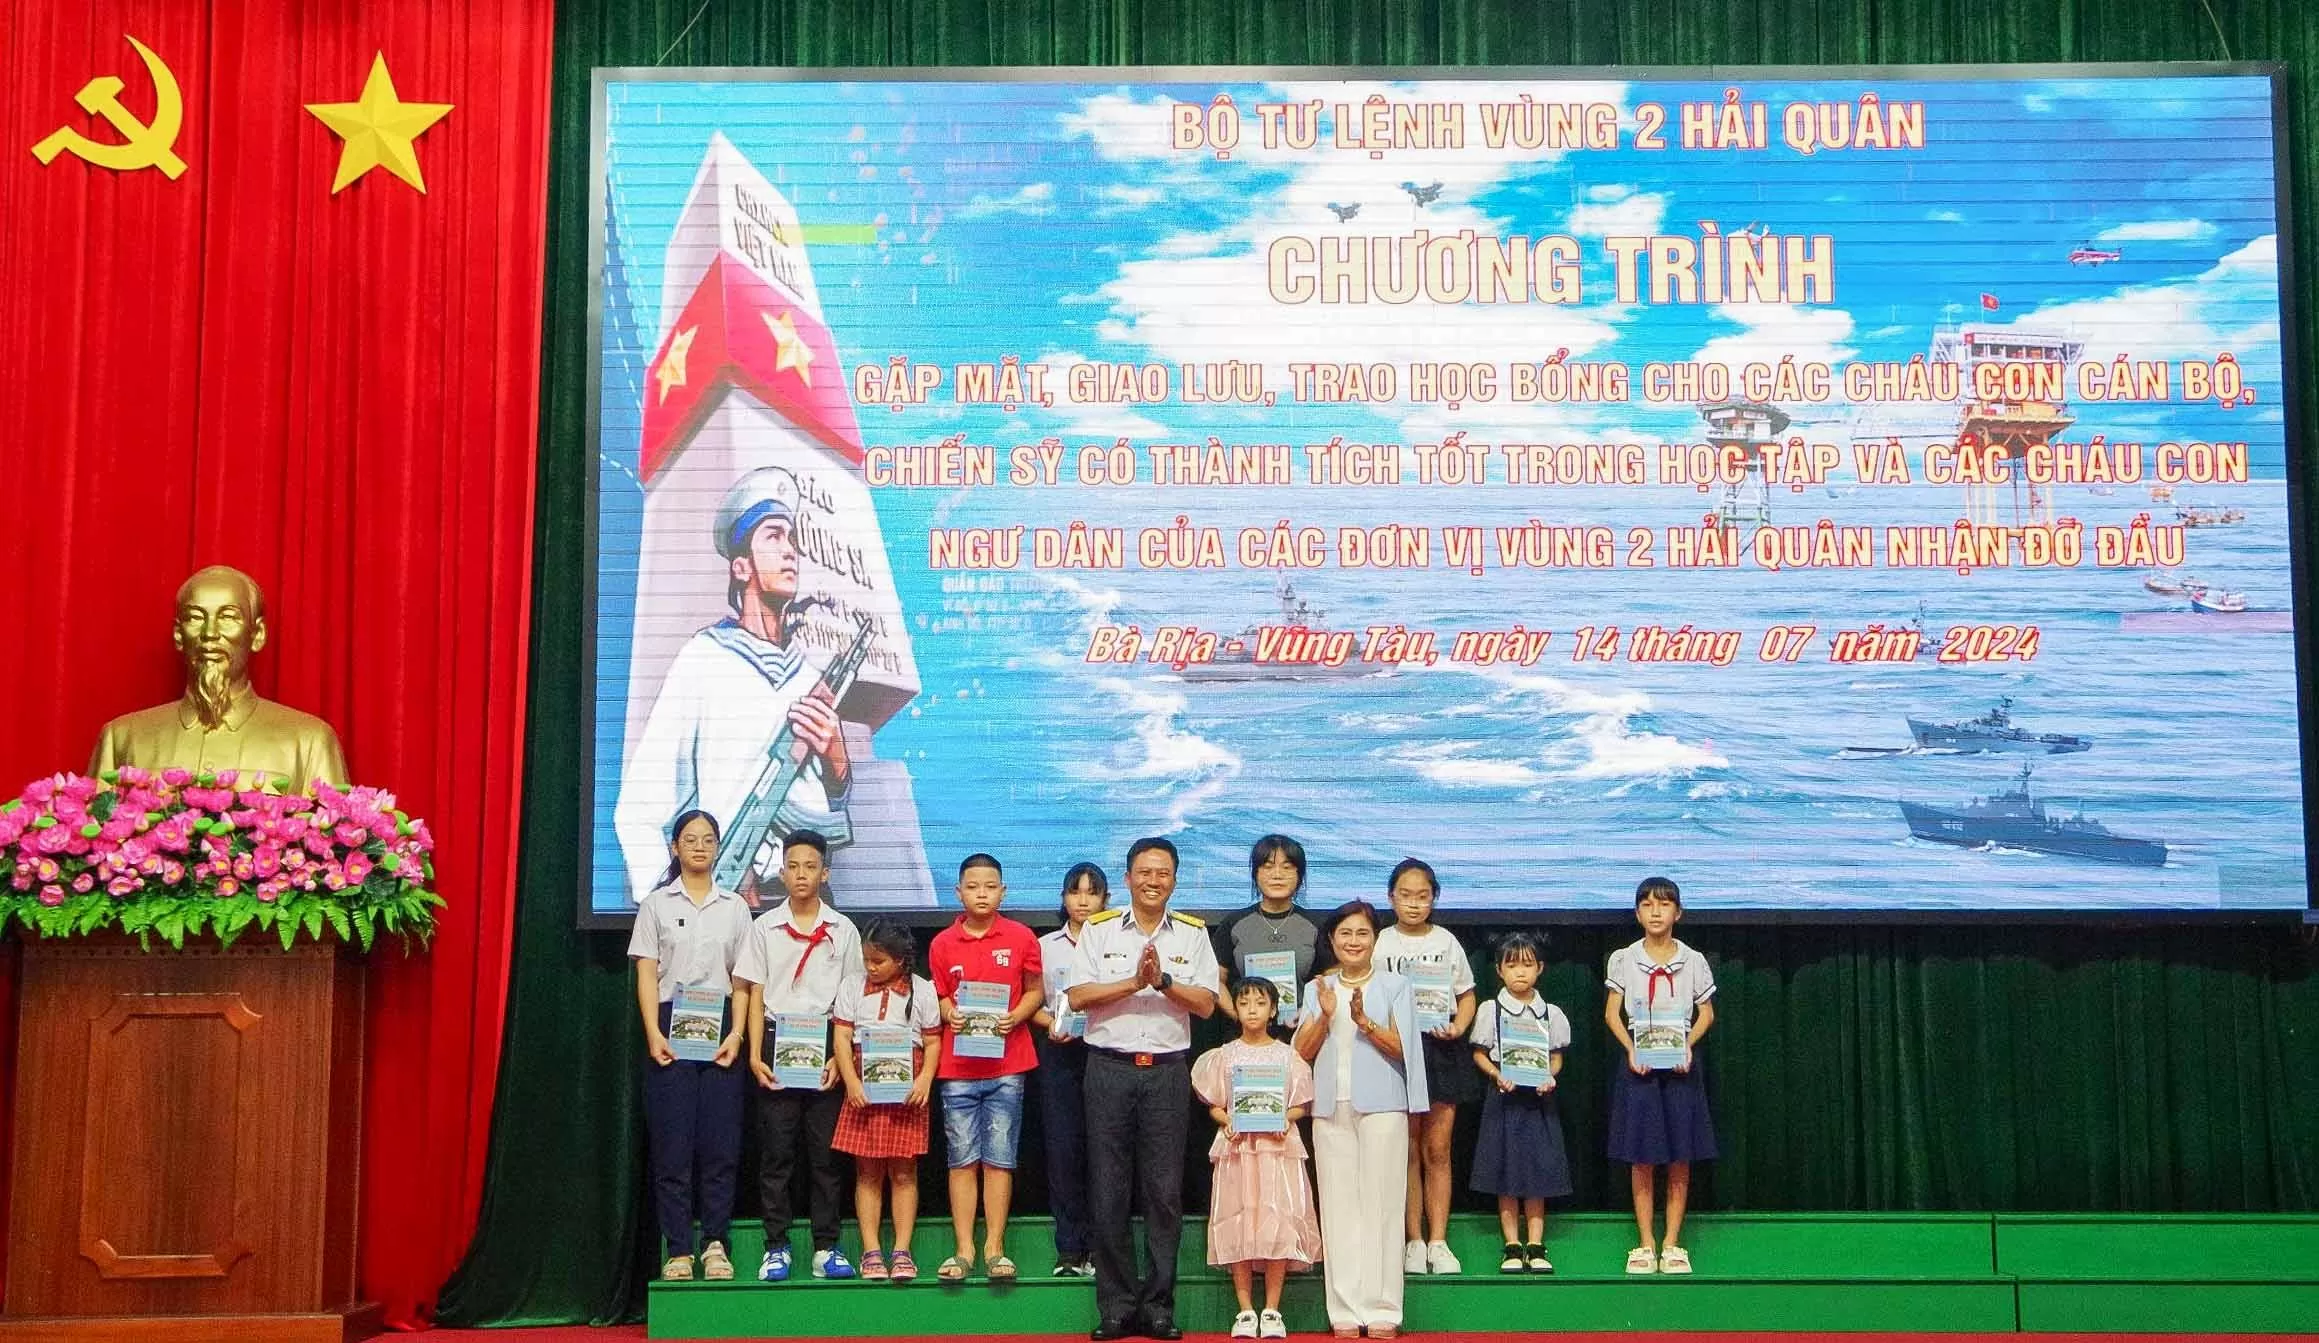 Đại tá Trần Mạnh Chiến và đại diện Công ty cổ phần Tôn Đông Á trao học bổng cho các cháu có thành tích học tập xuất sắc.